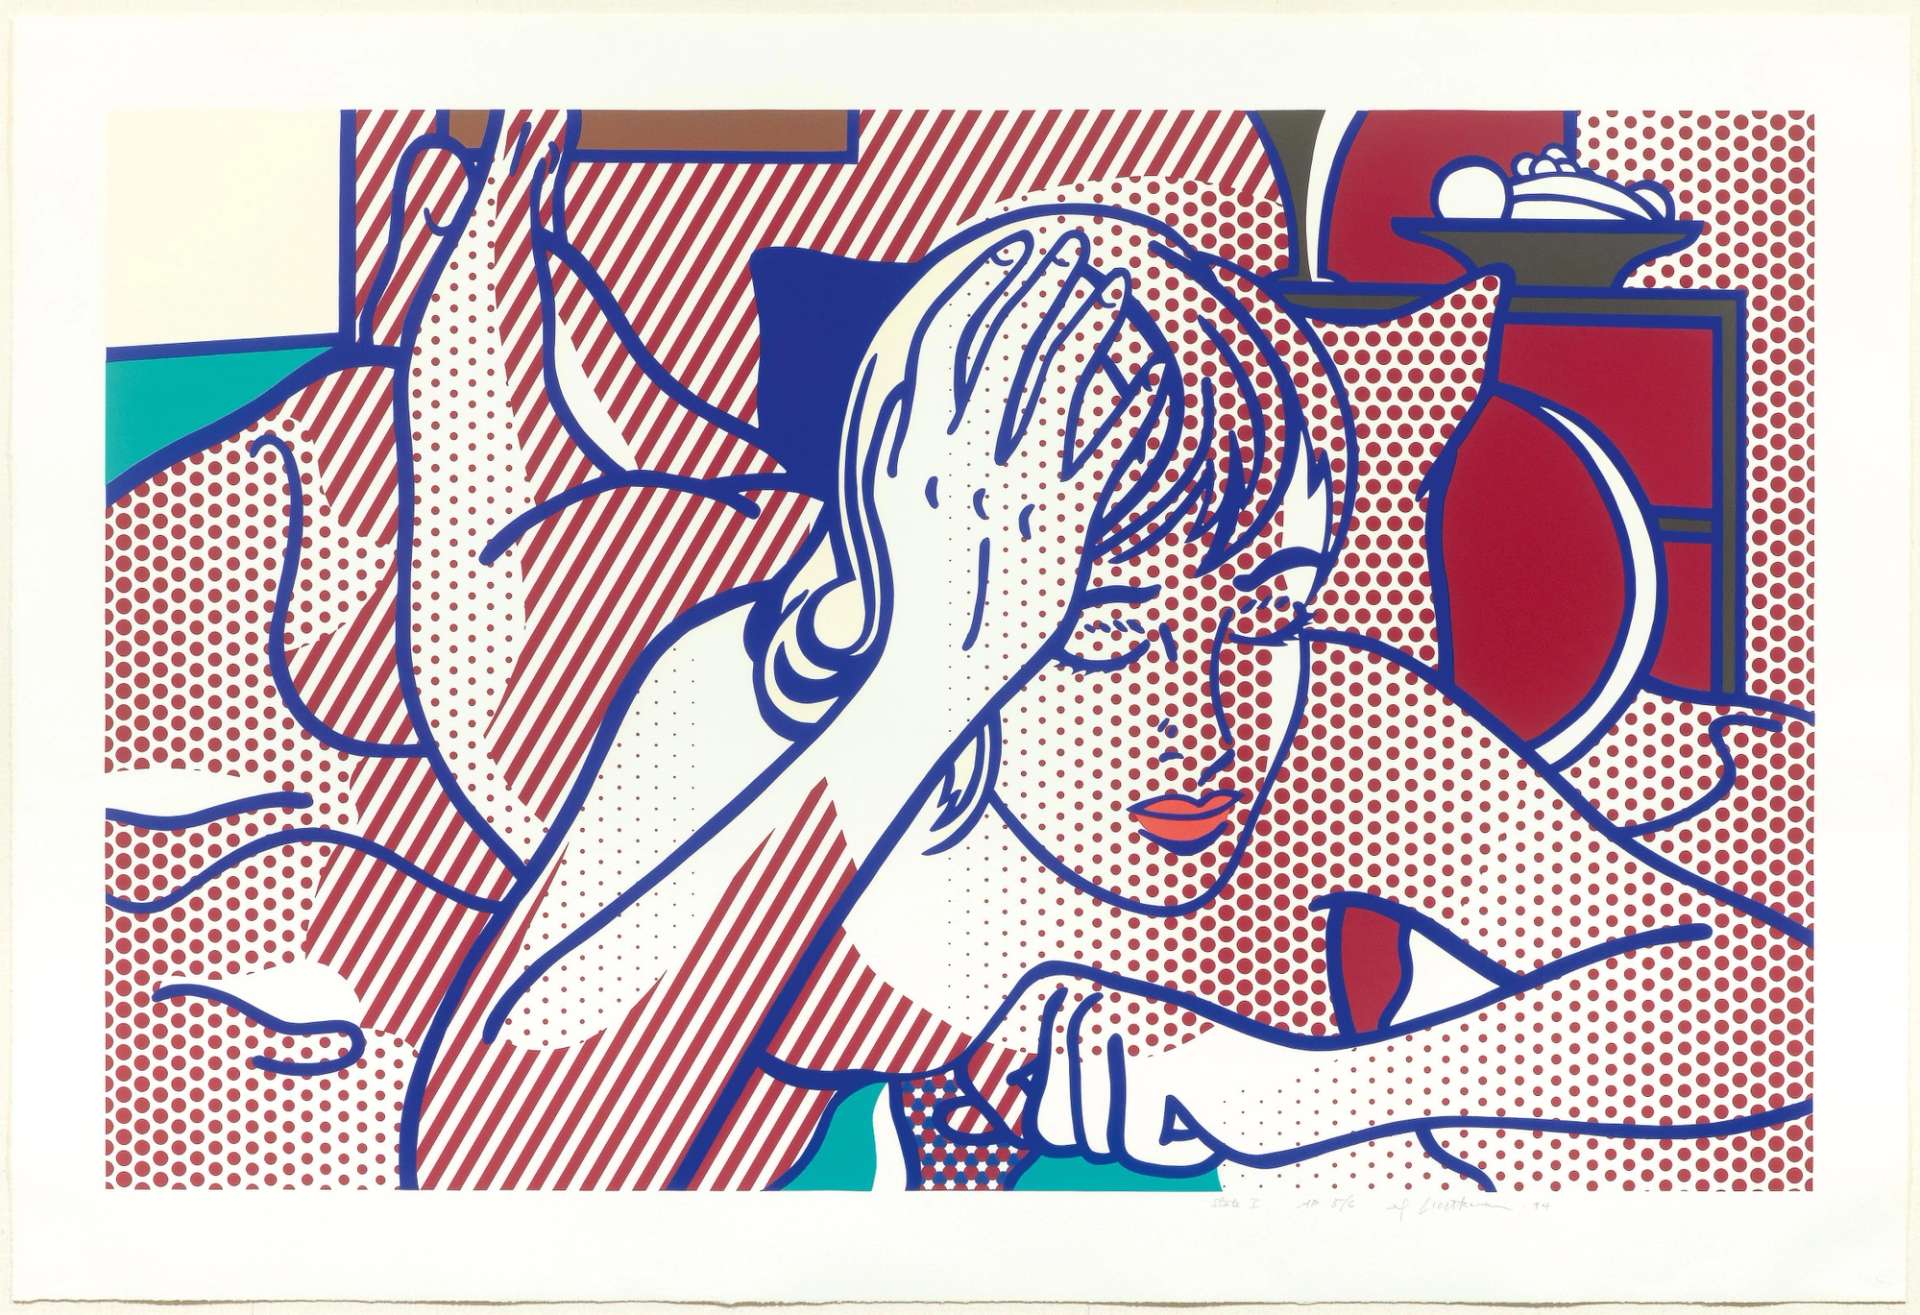 Roy Lichtenstein: Thinking Nude State I - Signed Print